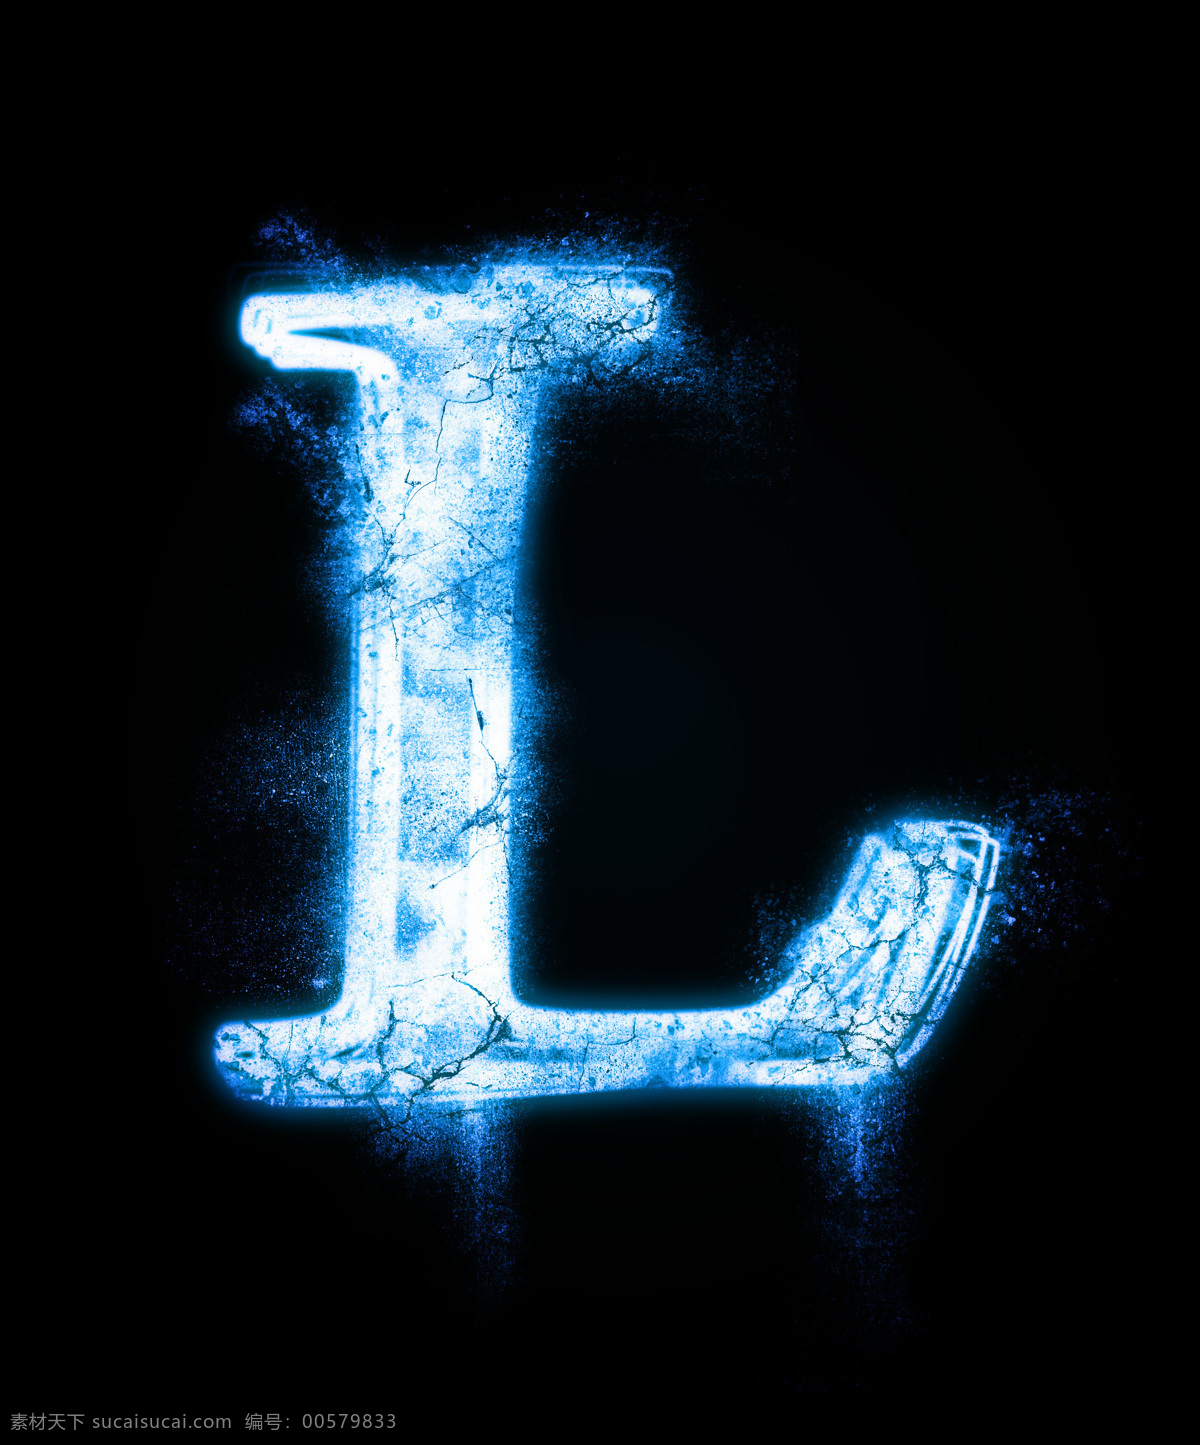 冰雪字体 字体 字体设计 英文字母 字母设计 英文设计 冰蓝 l 绘画书法 文化艺术